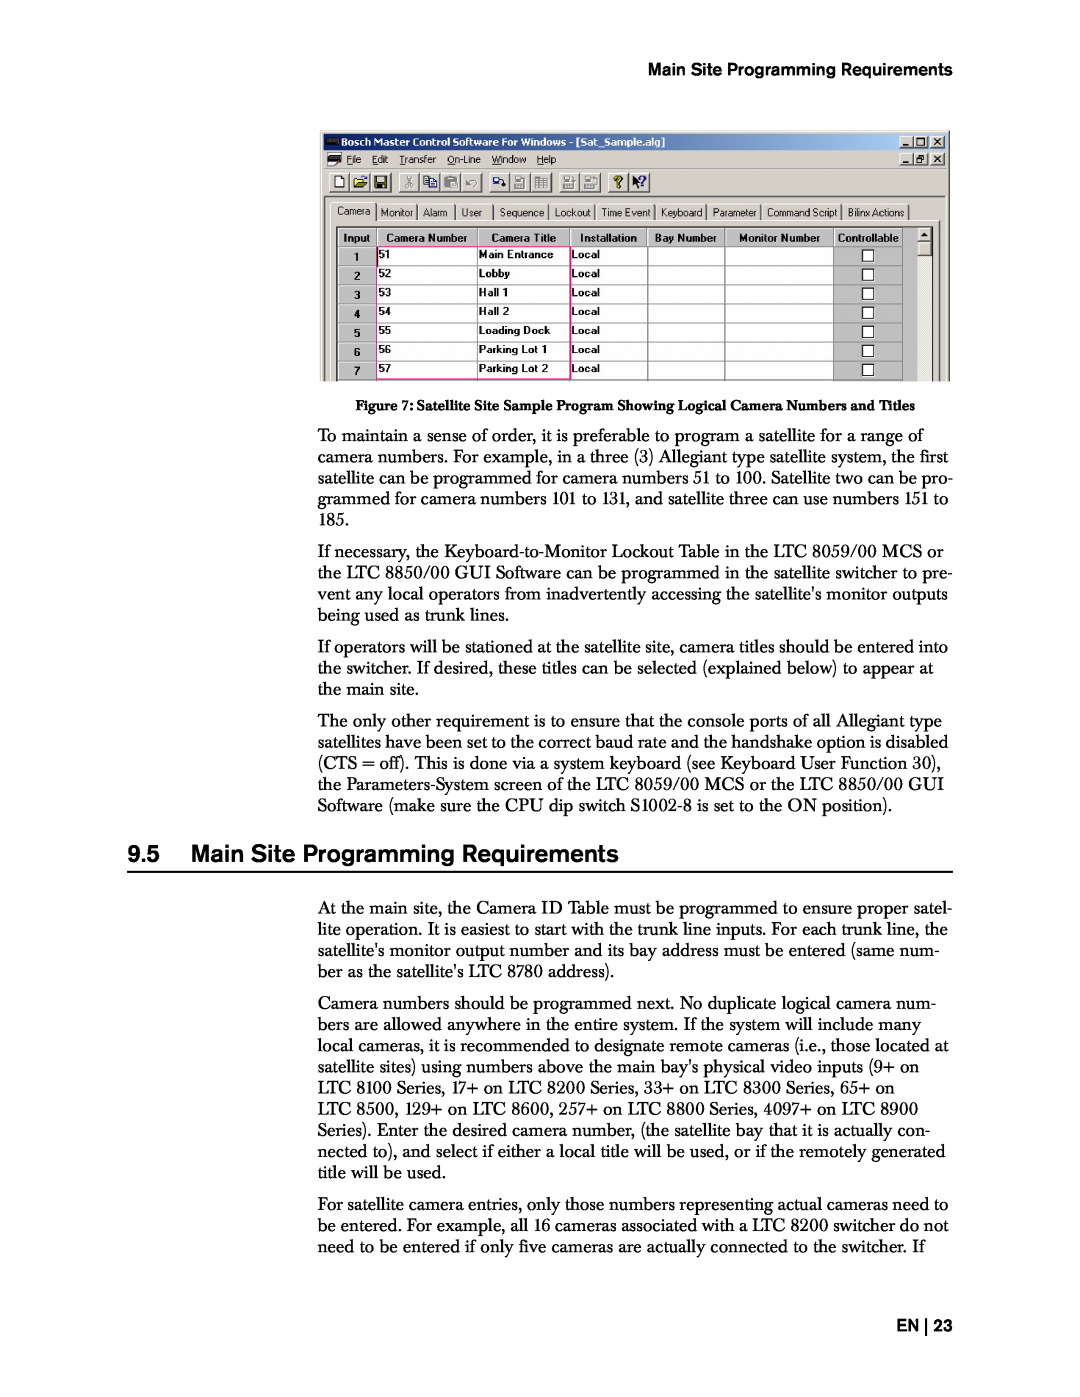 Bosch Appliances 8500, LTC instruction manual 9.5Main Site Programming Requirements, En 